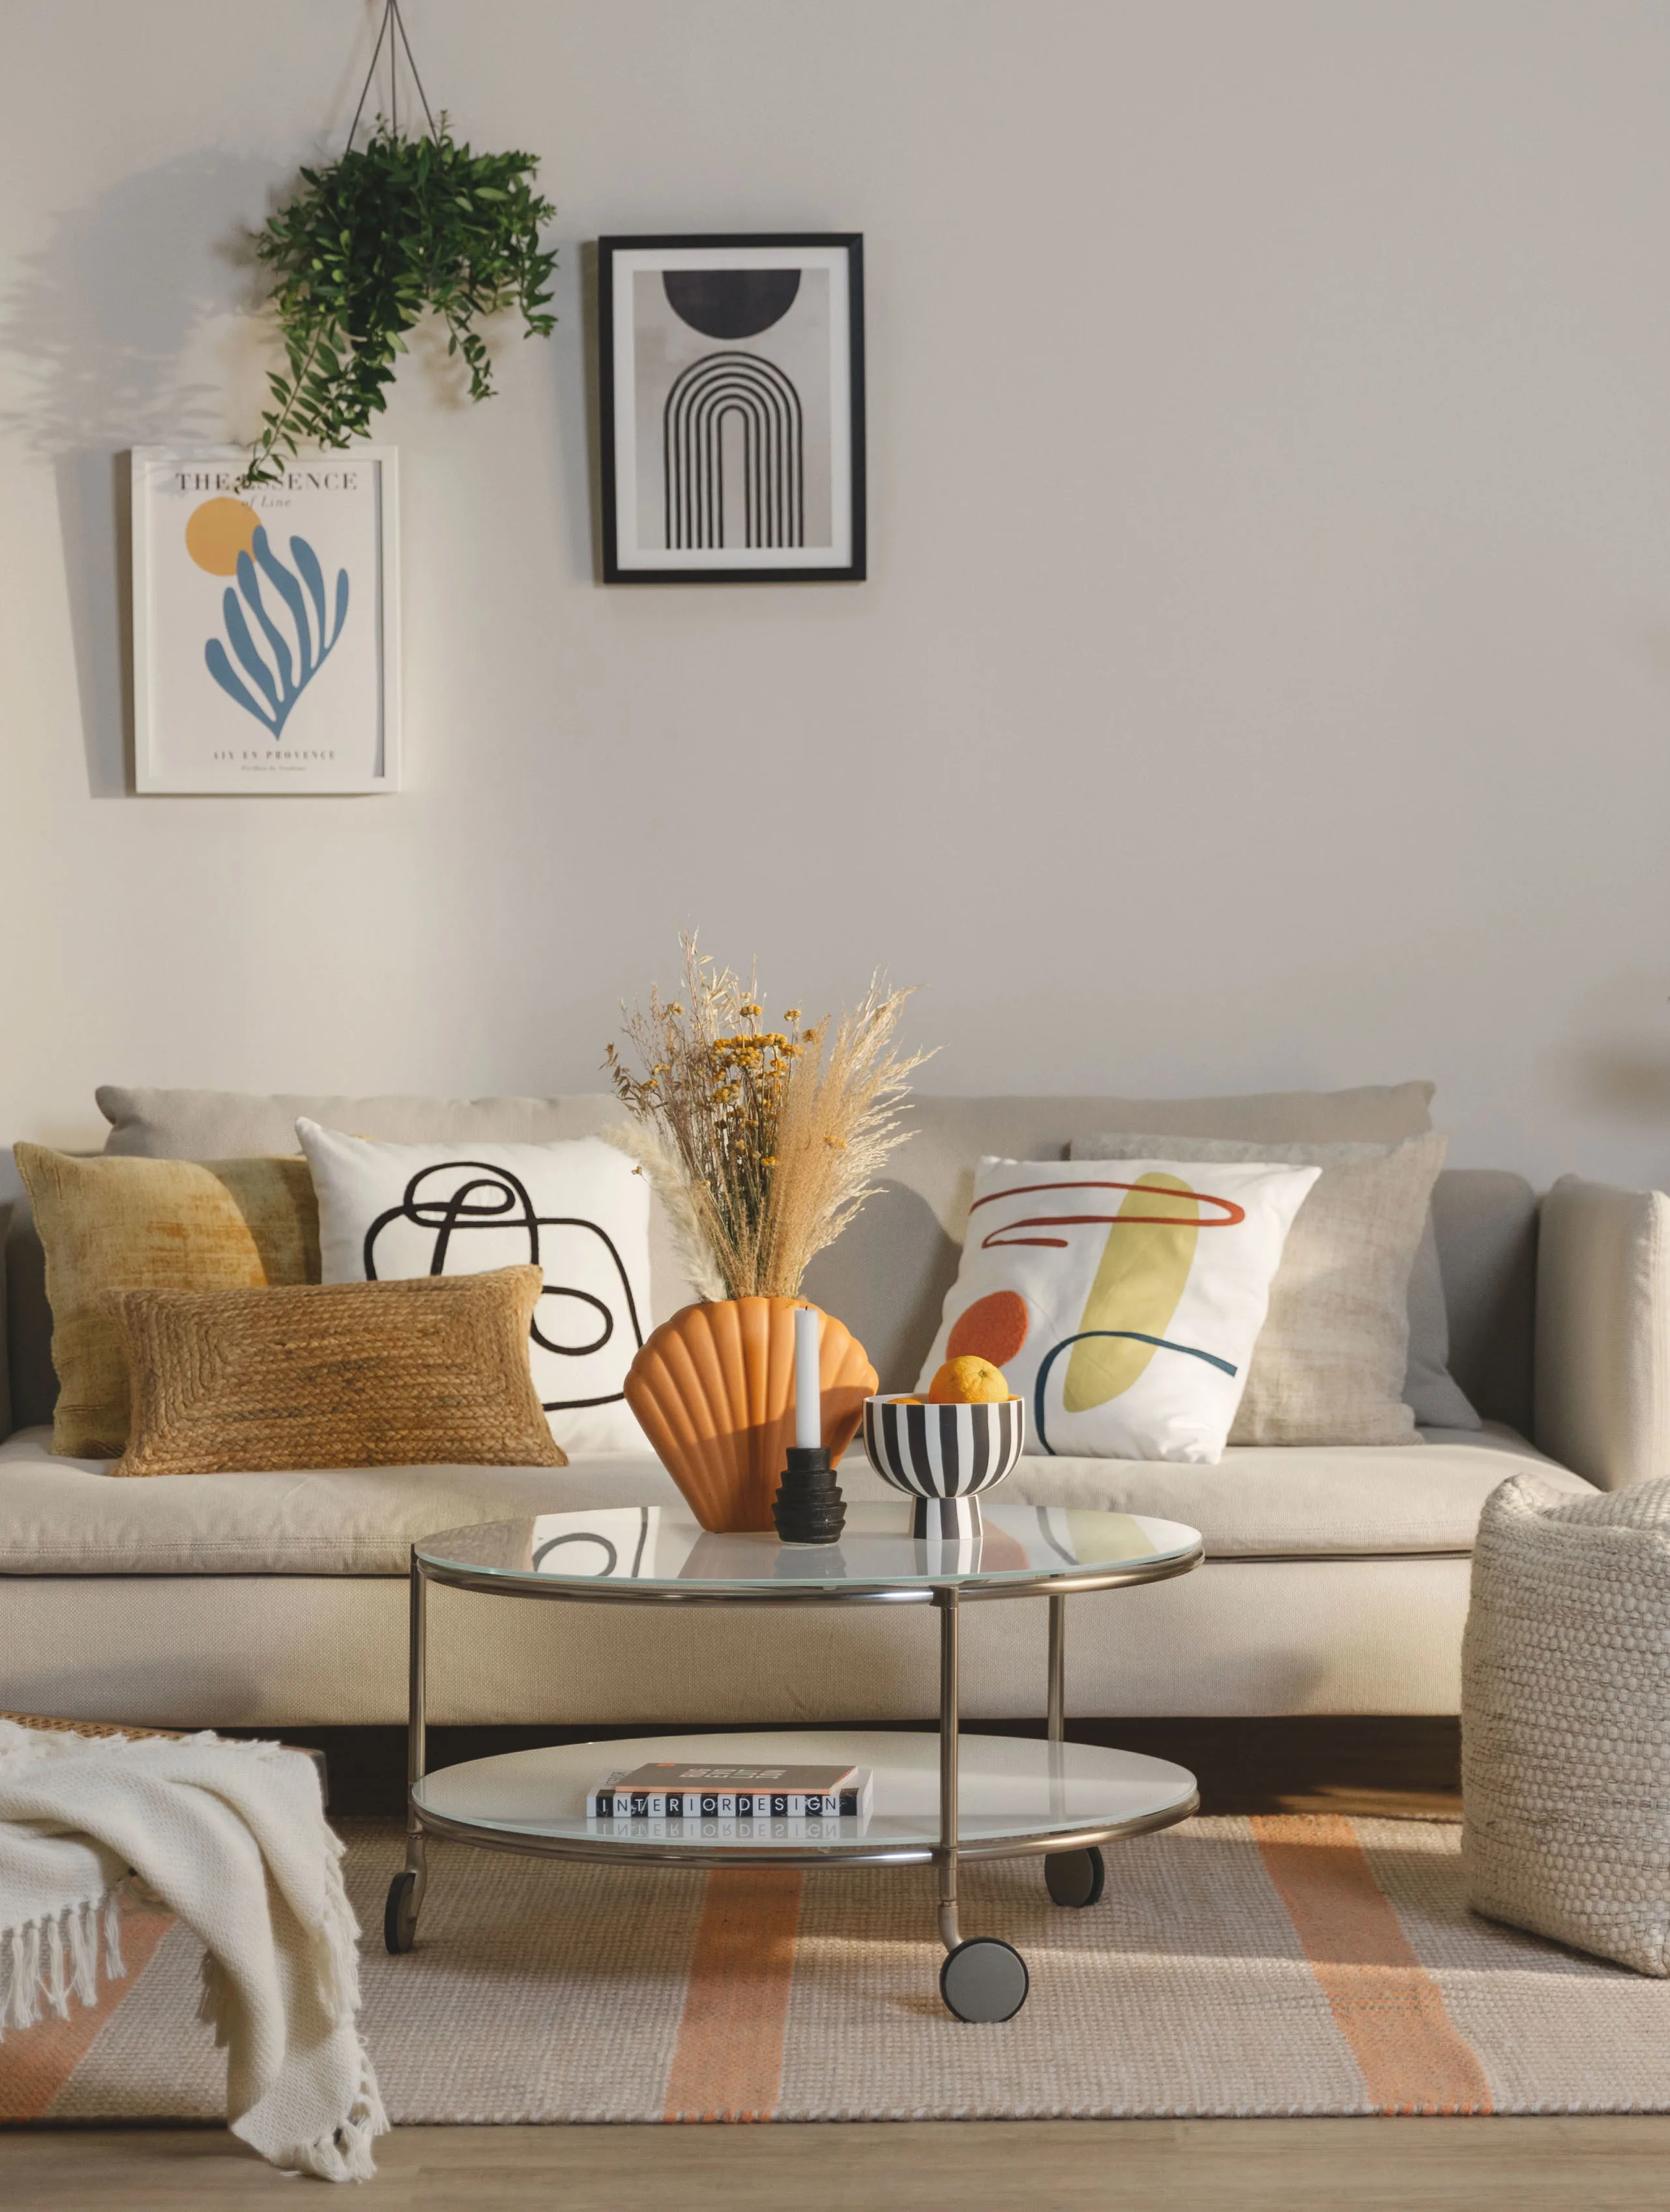 Lebhaft eingerichtetes Wohnzimmer mit verschiedenen Dekokissen in Weiß, Gelb und Braun, bunten Vasen in Orange, Bildern und einer Hängepflanze über dem Sofa